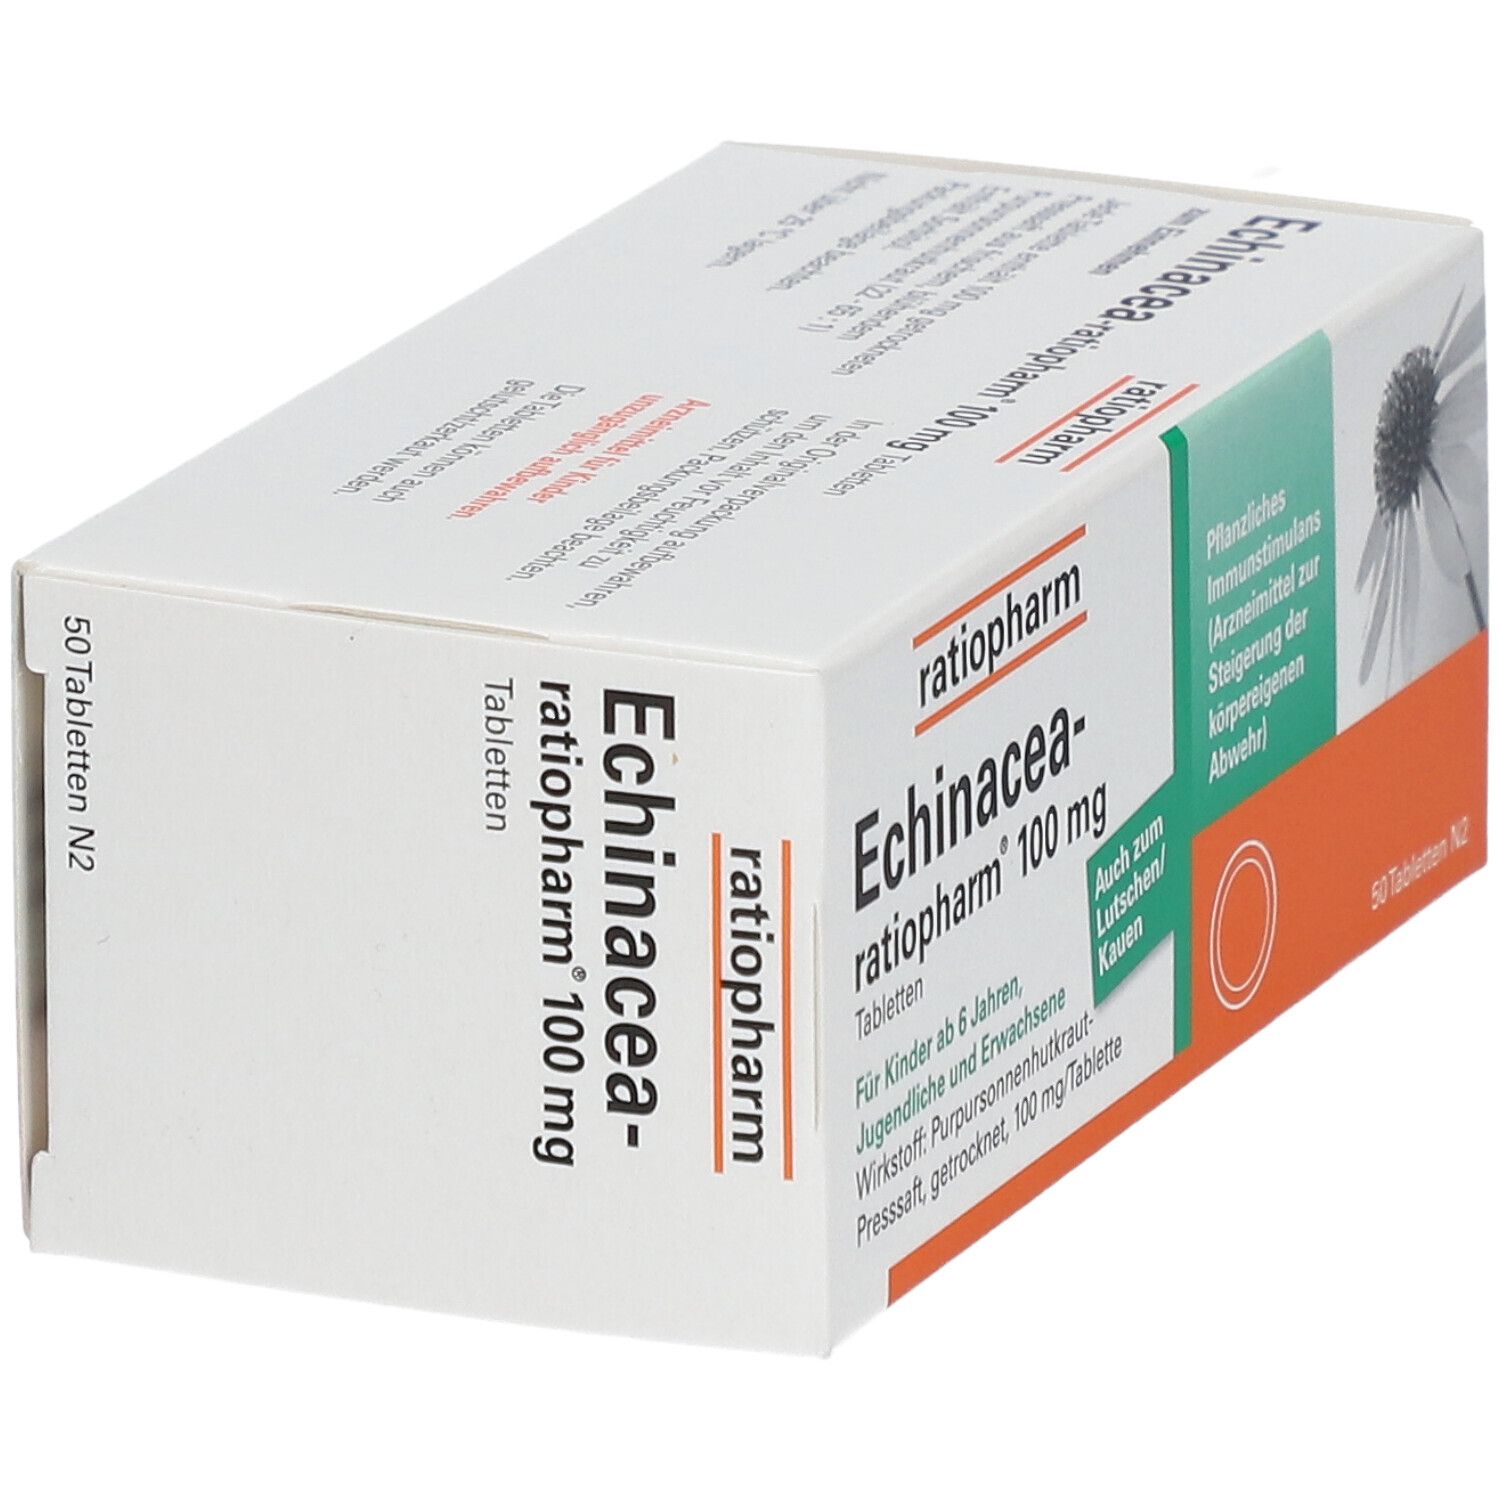 Echinacea-ratiopharm® 100 mg